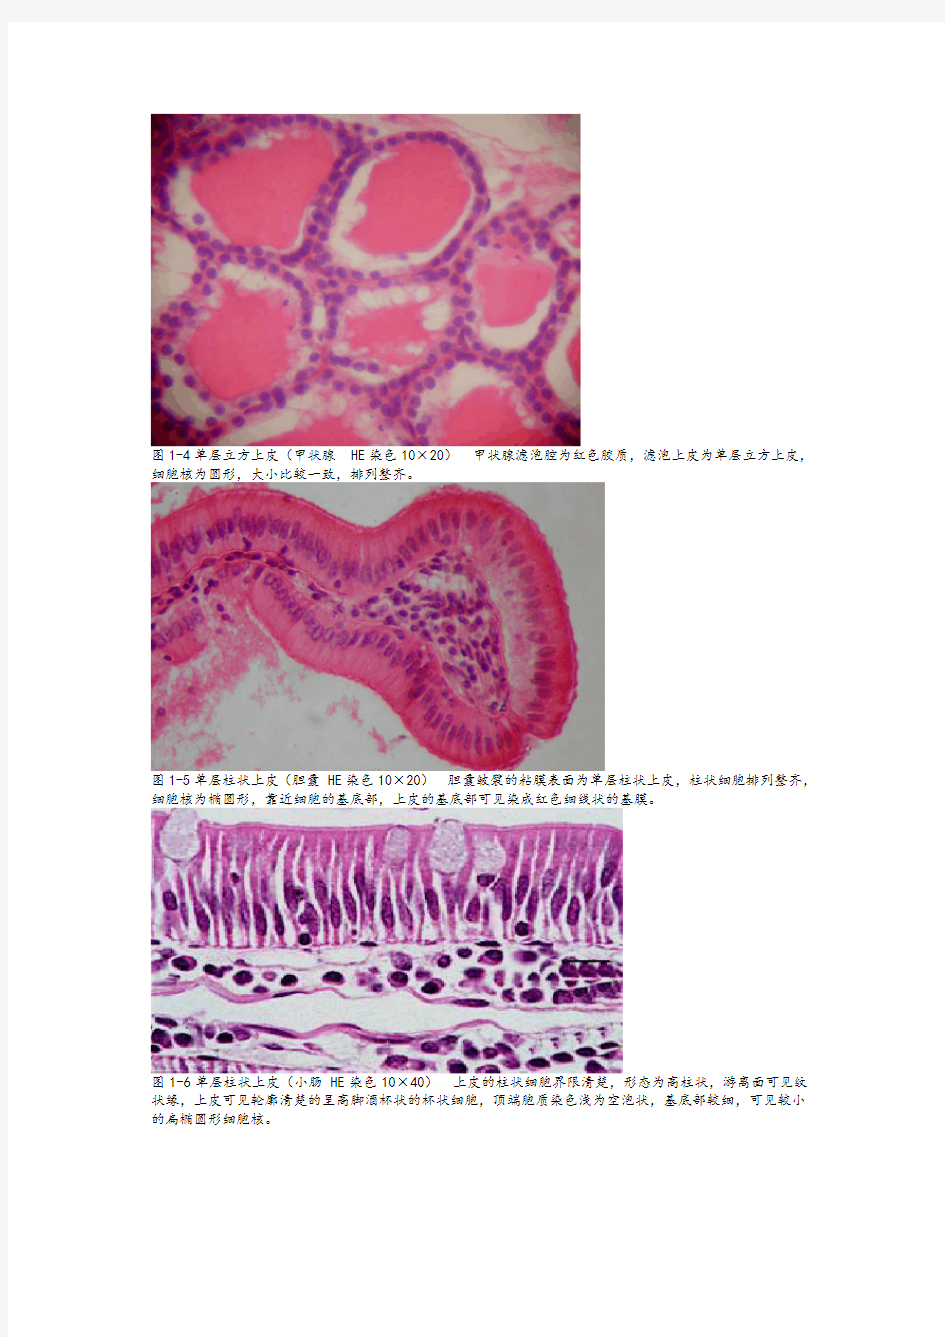 《组织学与胚胎学》图谱详细版(温州医科大学)